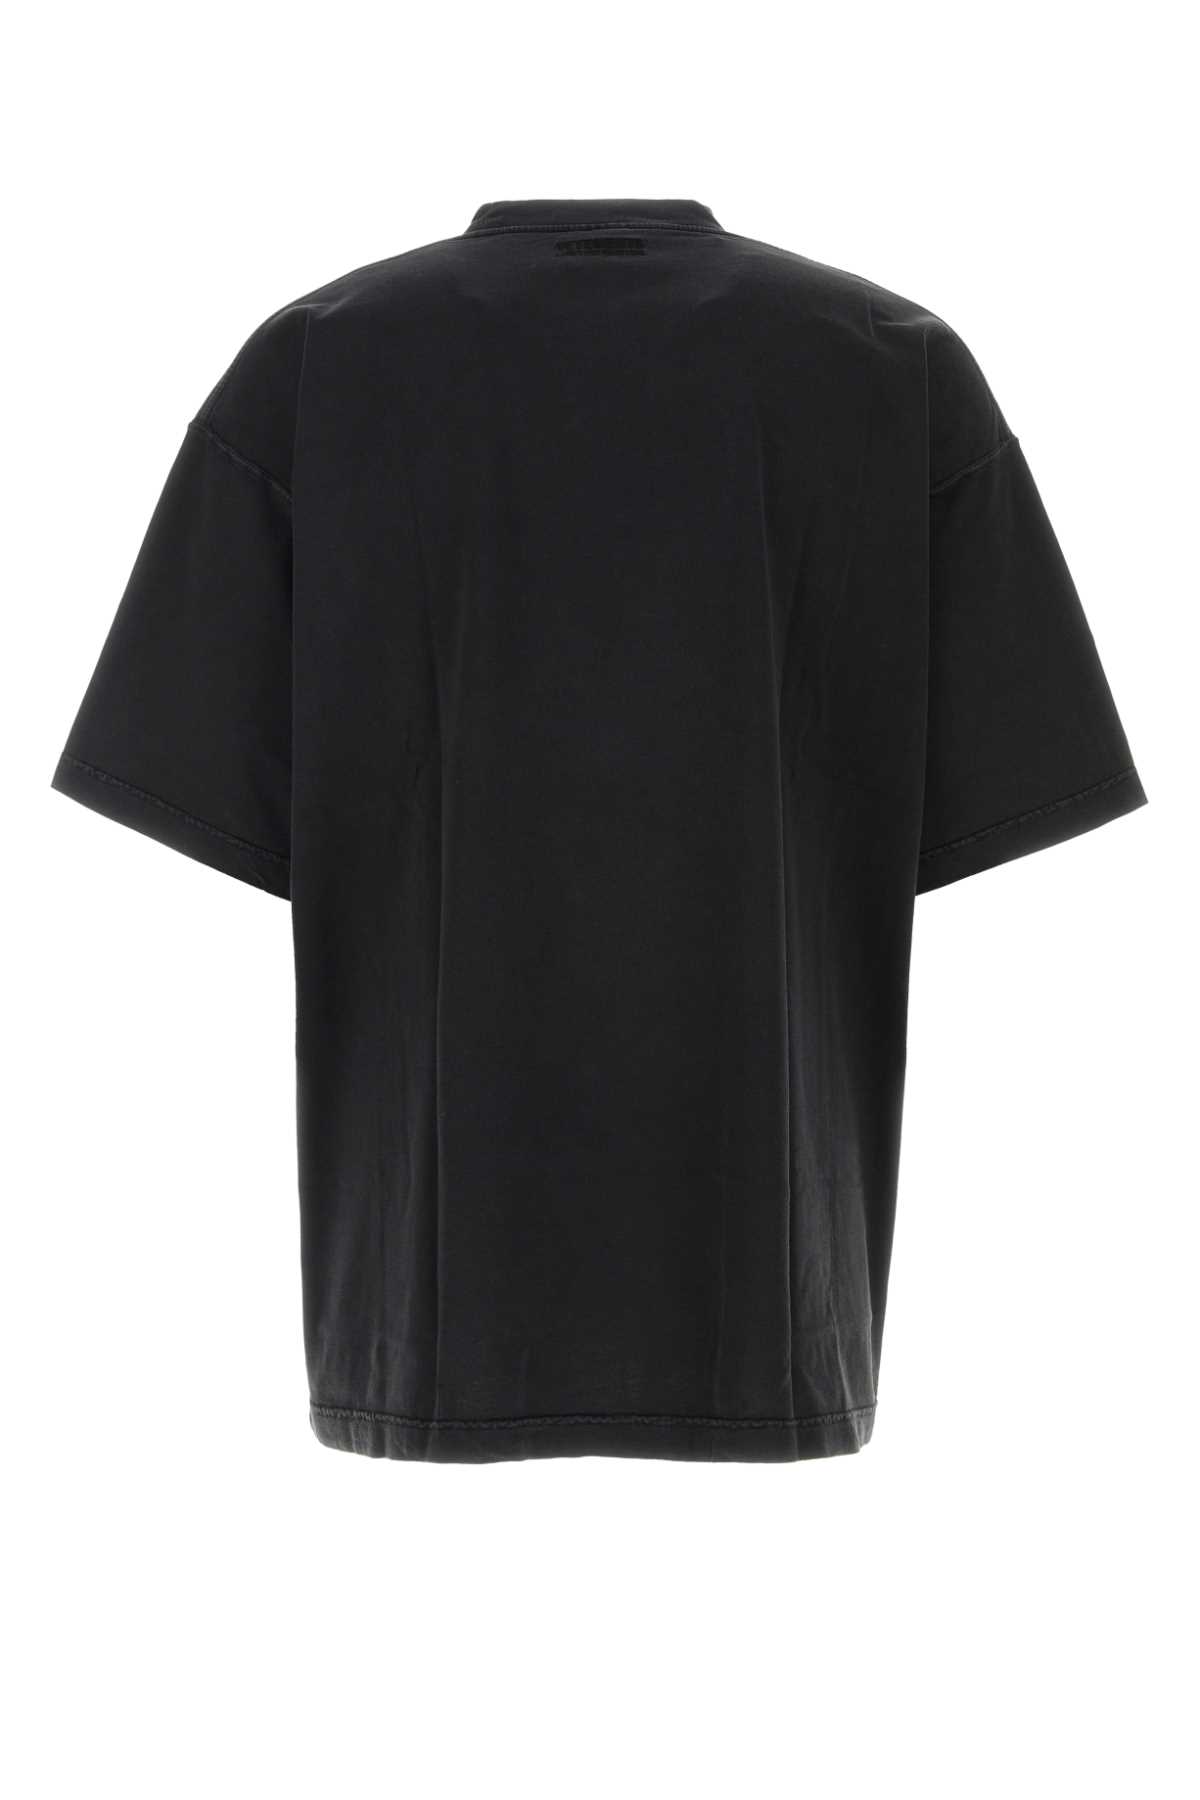 Shop Vetements Black Cotton Oversize T-shirt